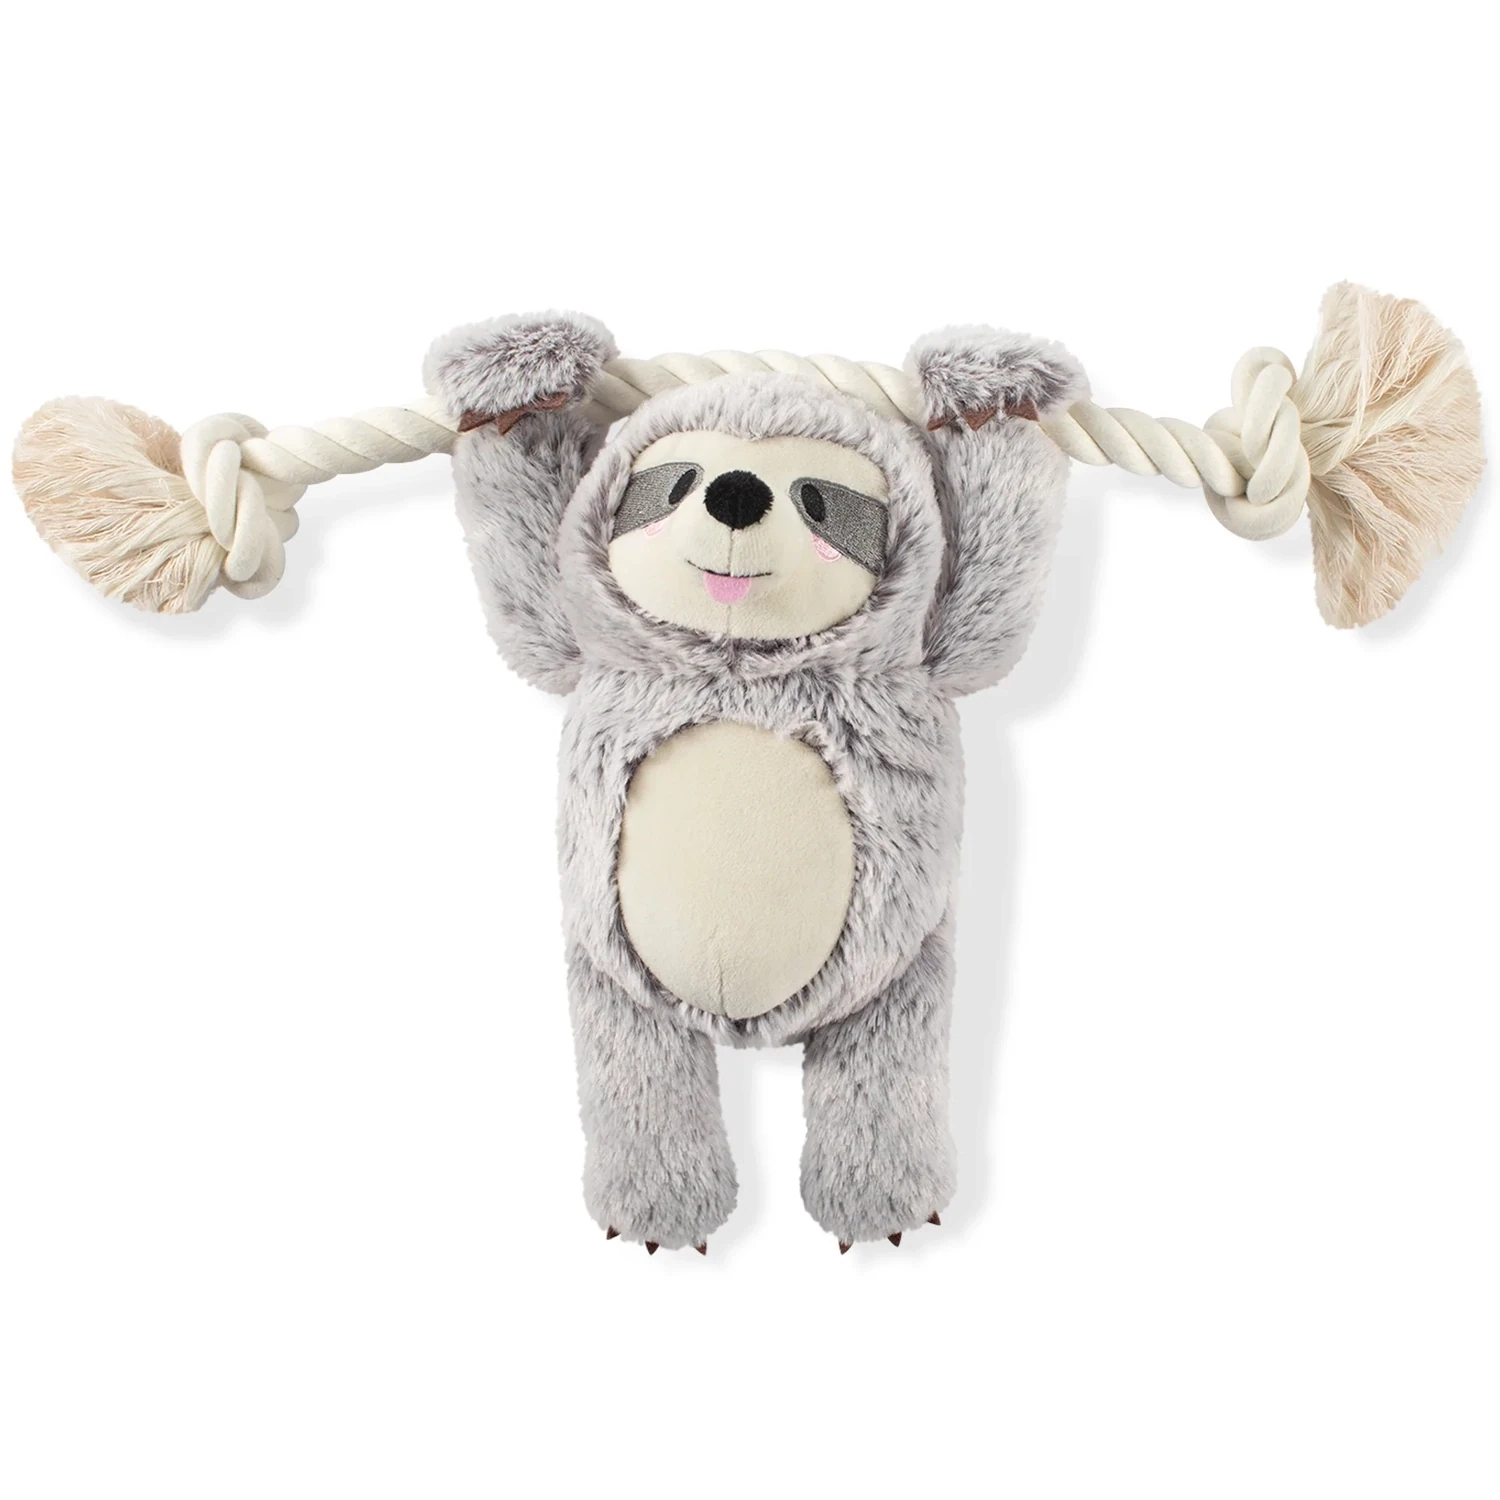 Fringe - Sloth on a Rope